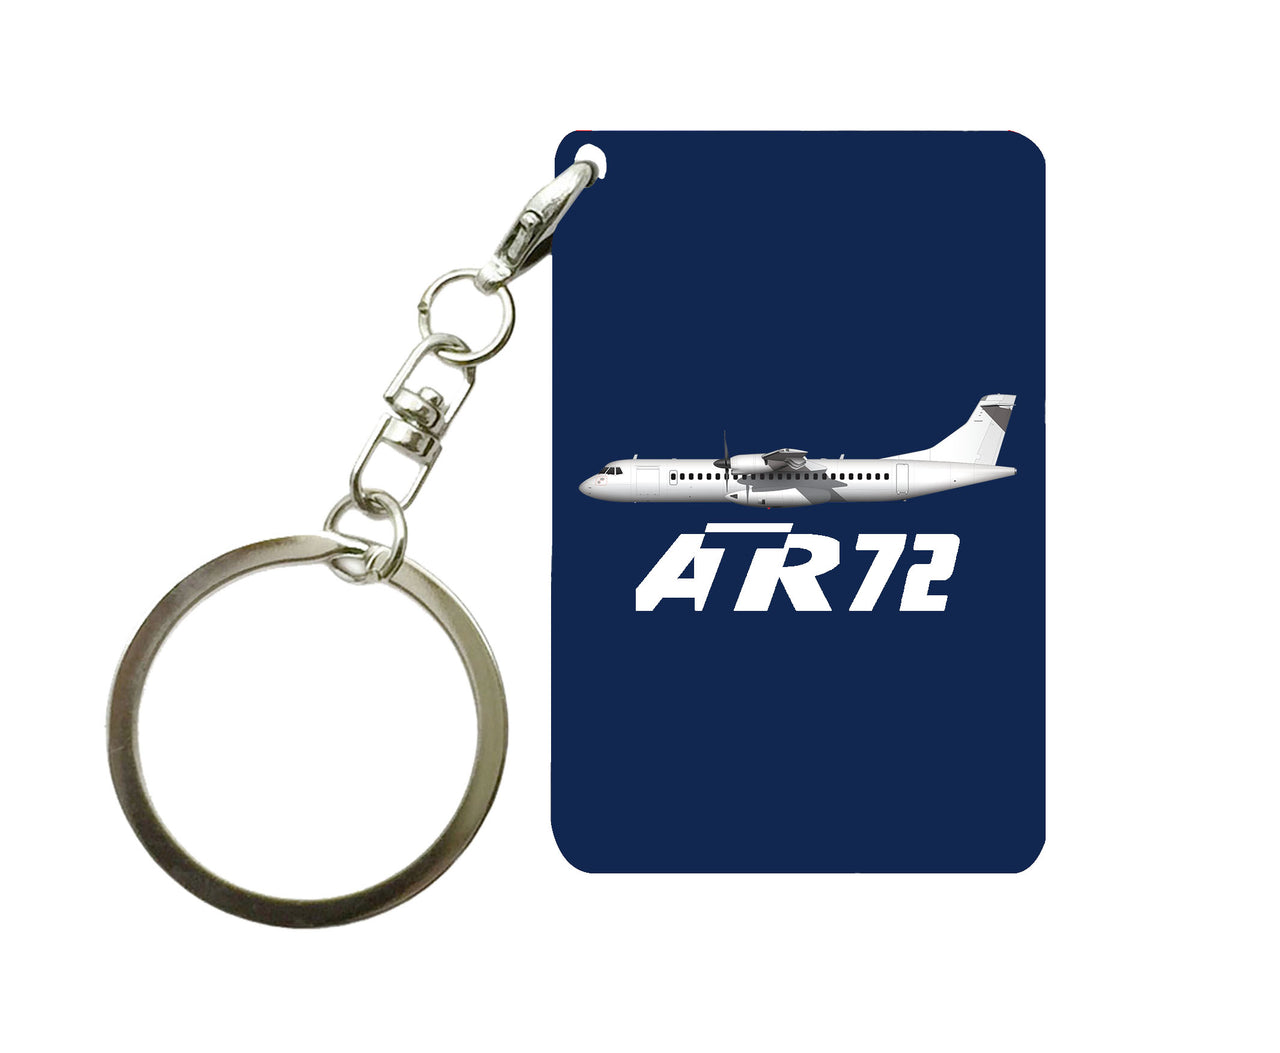 The ATR72 Designed Key Chains